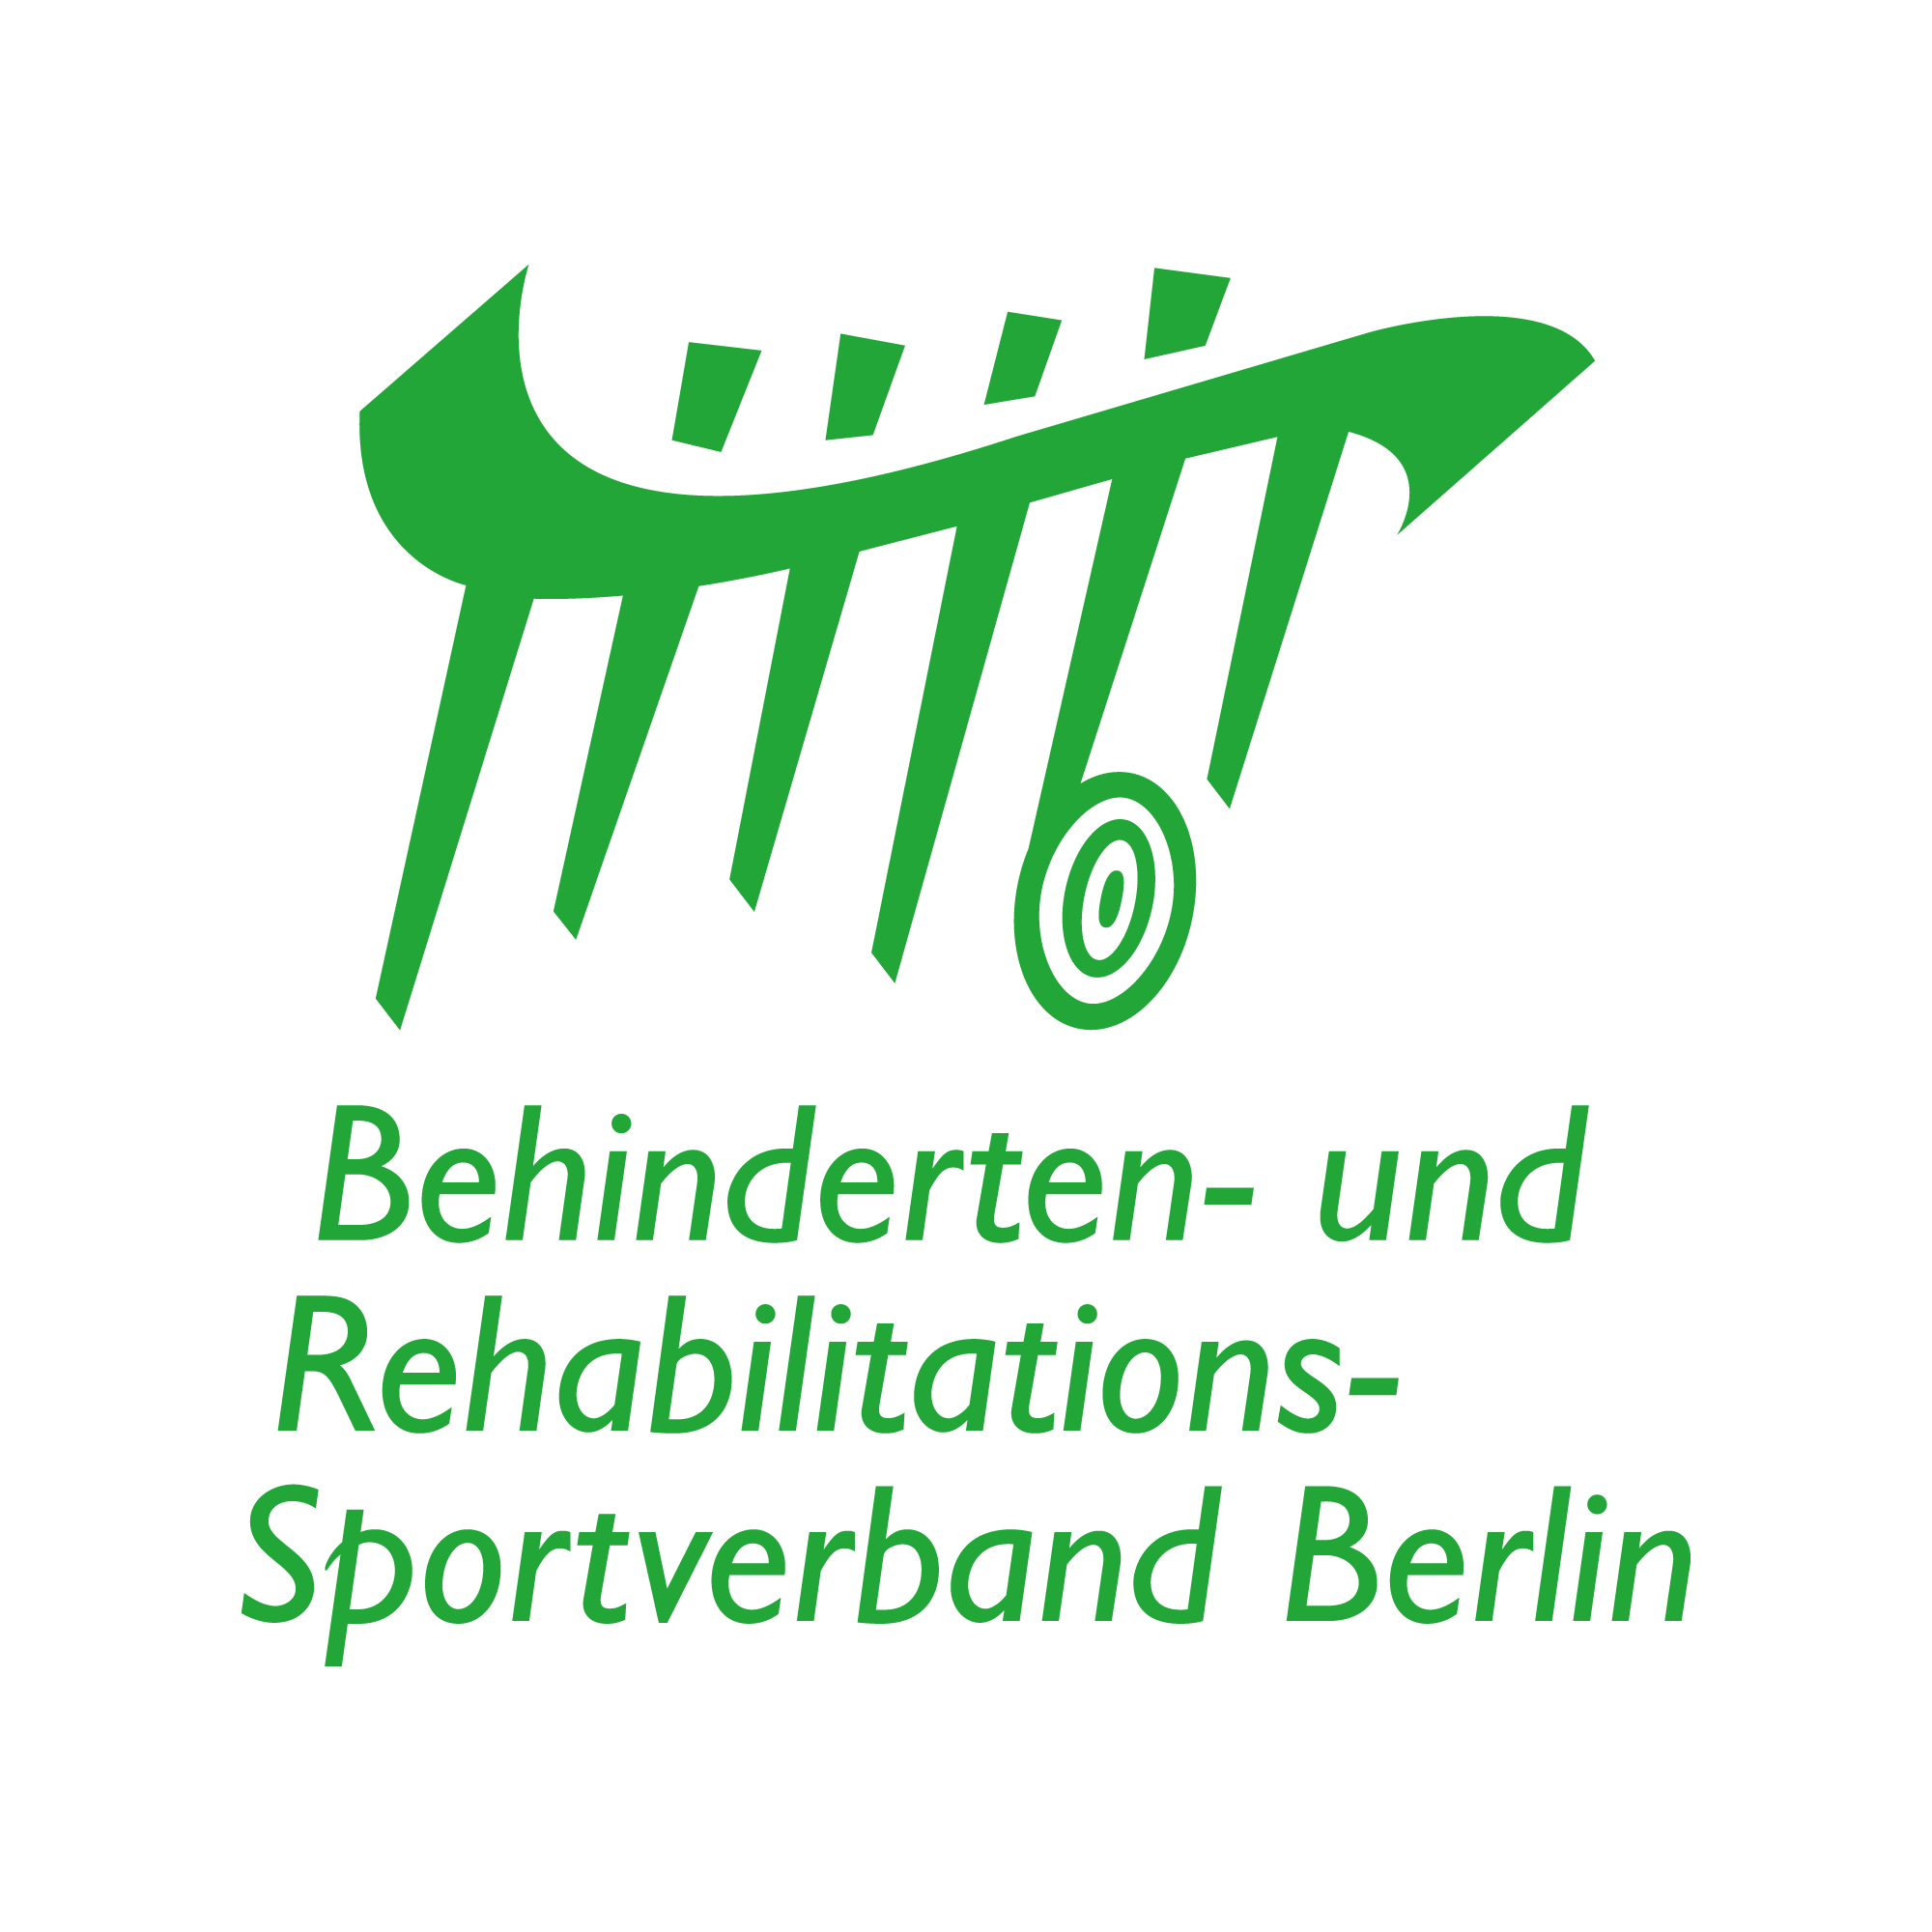 Logo des Behinderten- und Rehabilitations-Sportverbands Berlin - grüne Schrift groß